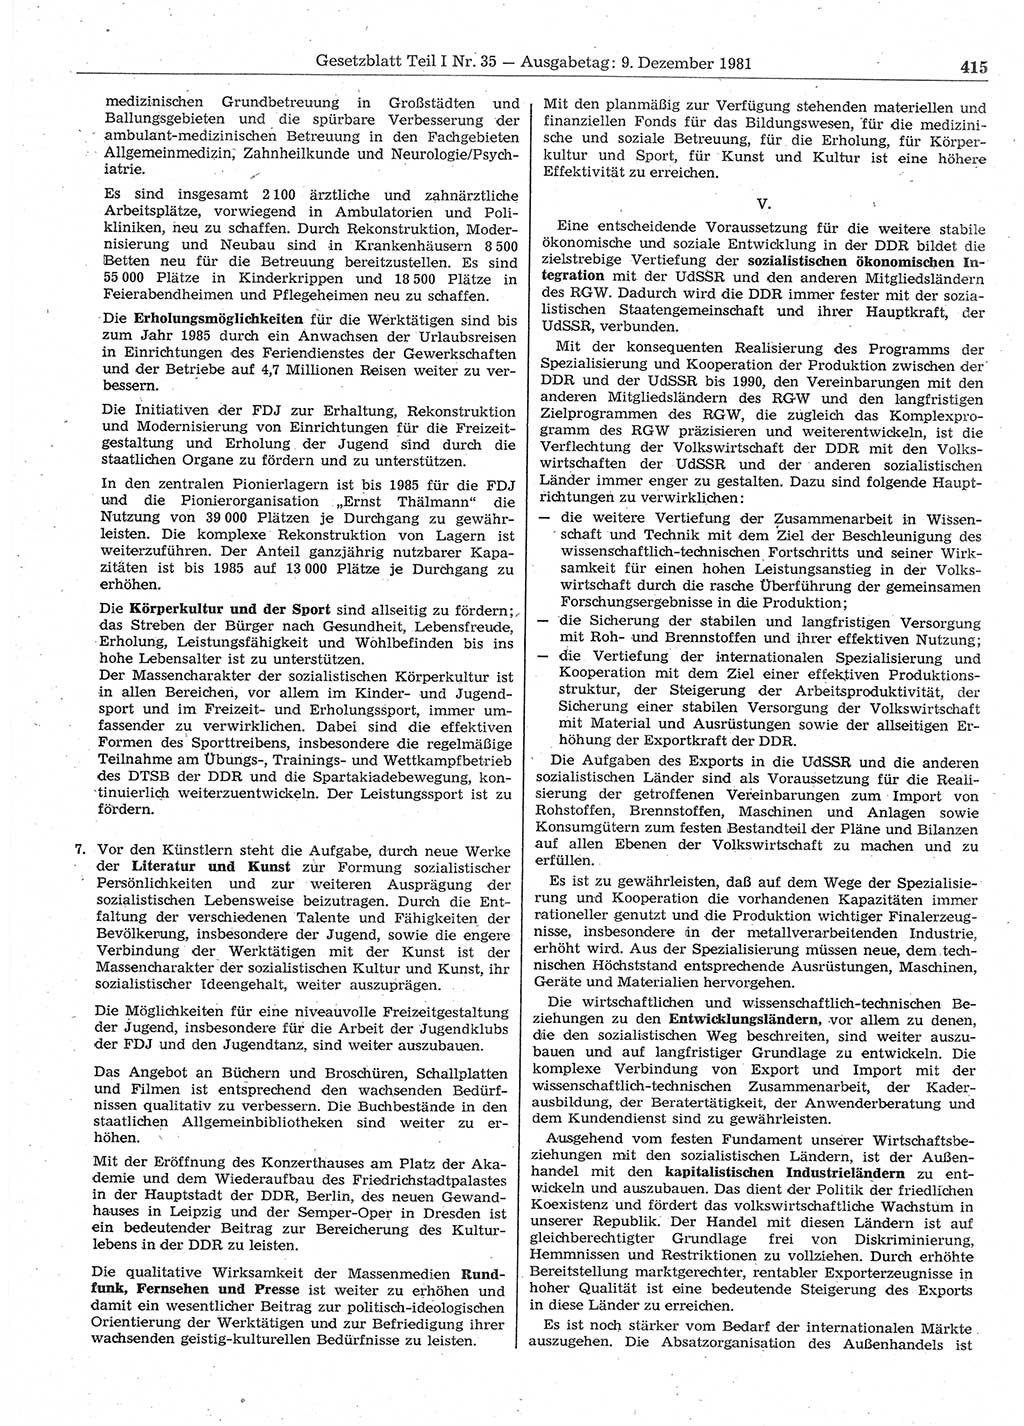 Gesetzblatt (GBl.) der Deutschen Demokratischen Republik (DDR) Teil Ⅰ 1981, Seite 415 (GBl. DDR Ⅰ 1981, S. 415)